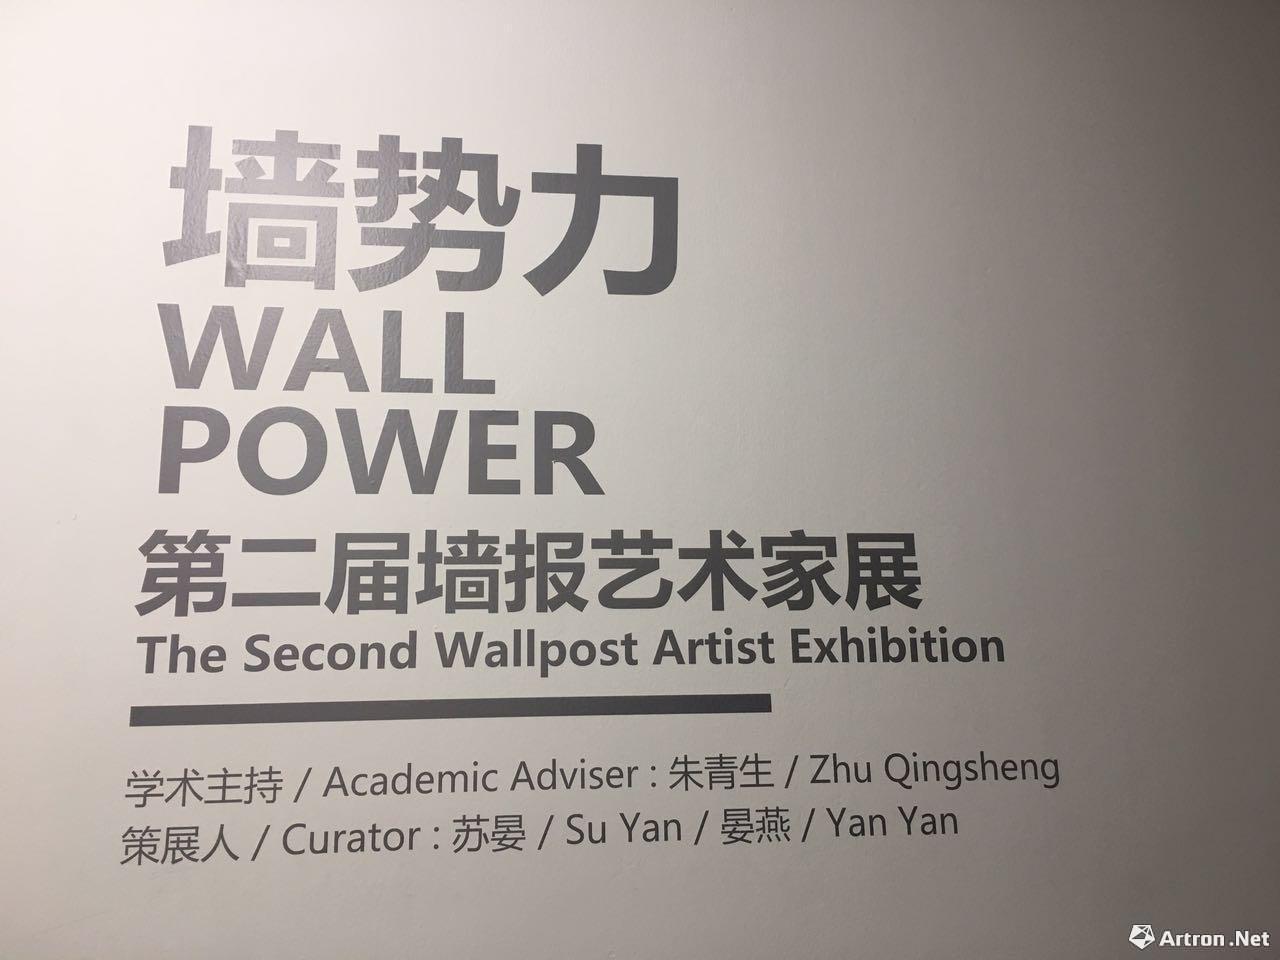 新时代的锋芒与力量——第二届“墙势力：墙报艺术家展”于今日美术馆正式开幕